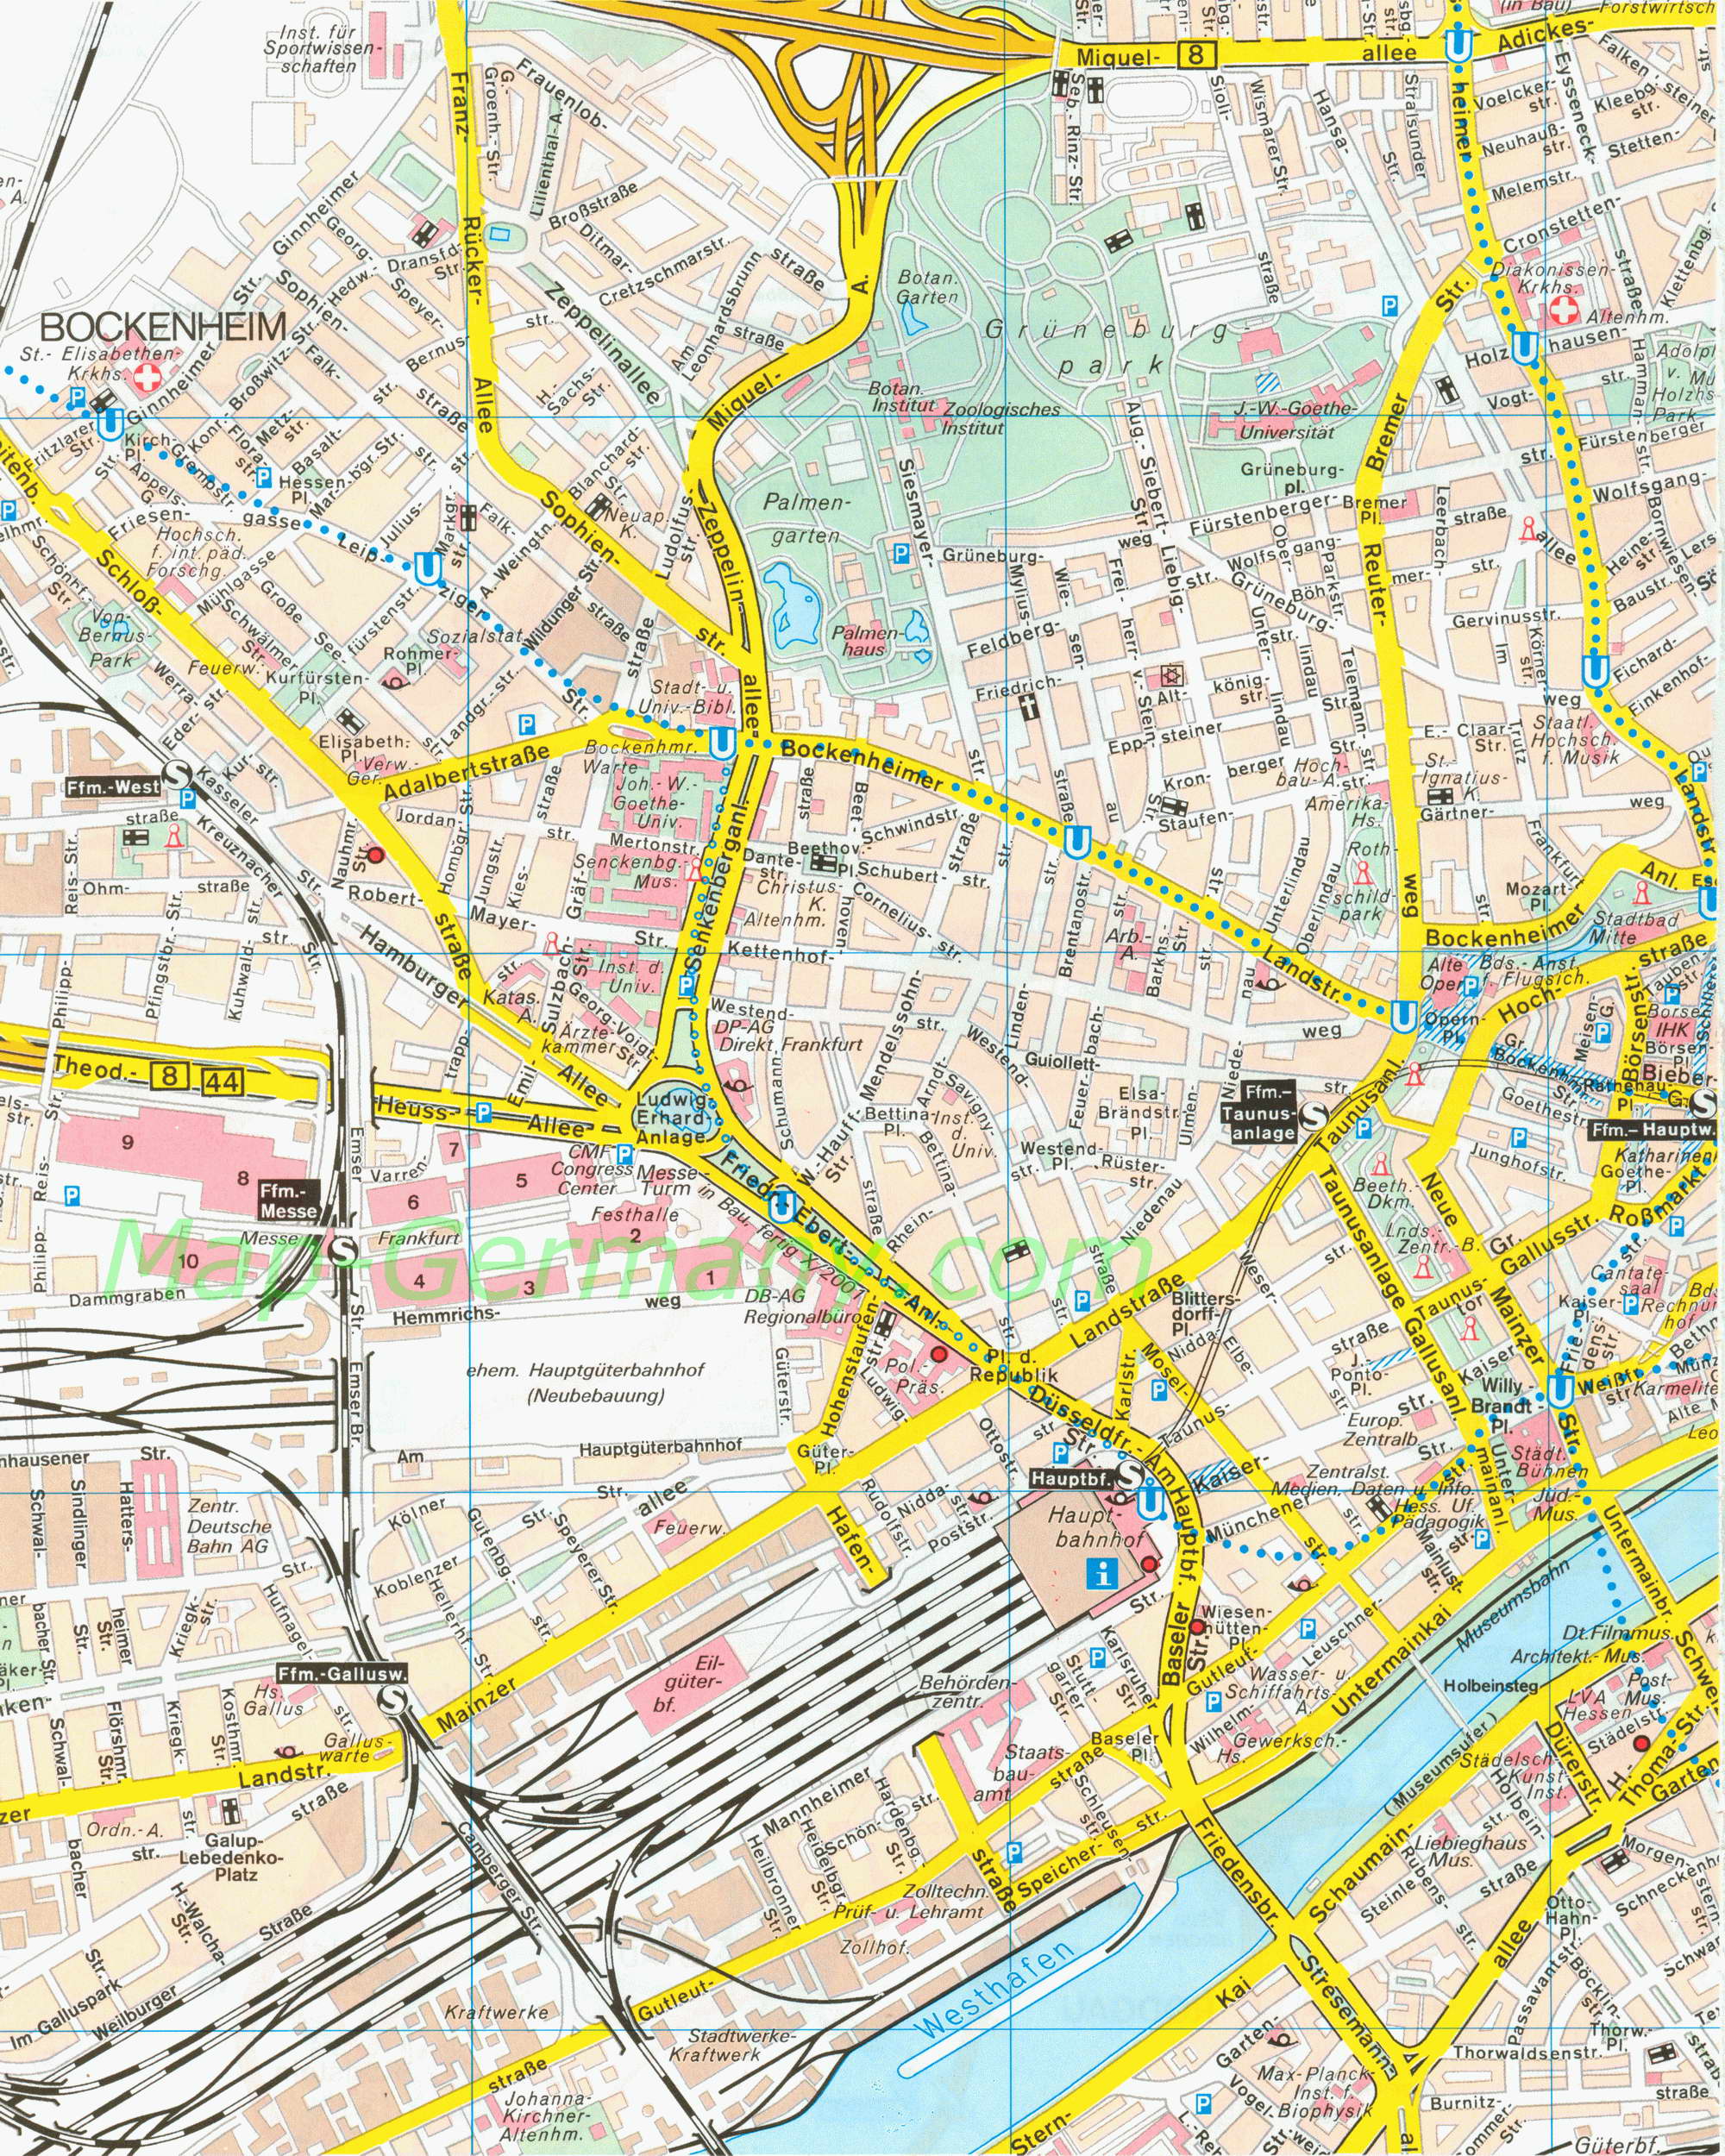 Карта улиц Франкфурта. Подробная карта улиц Франкфурта масштаба 1см:150м, A0 - 